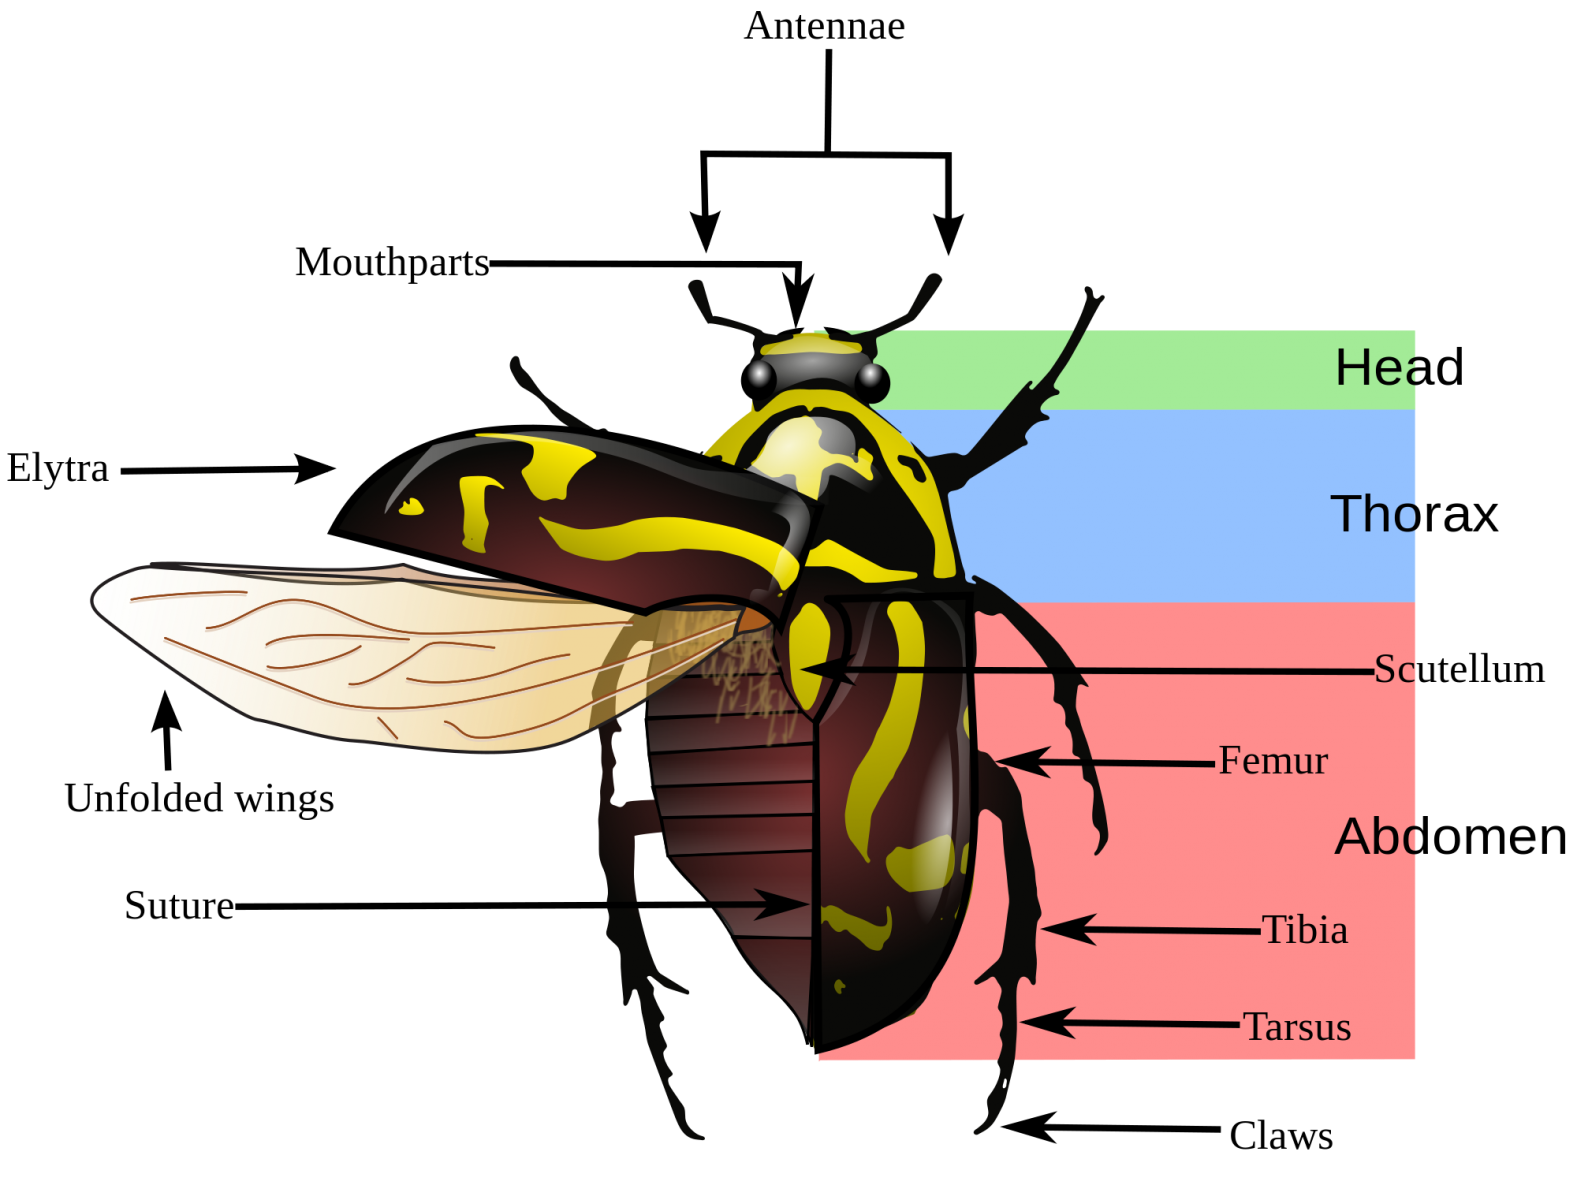 Beetle morphology